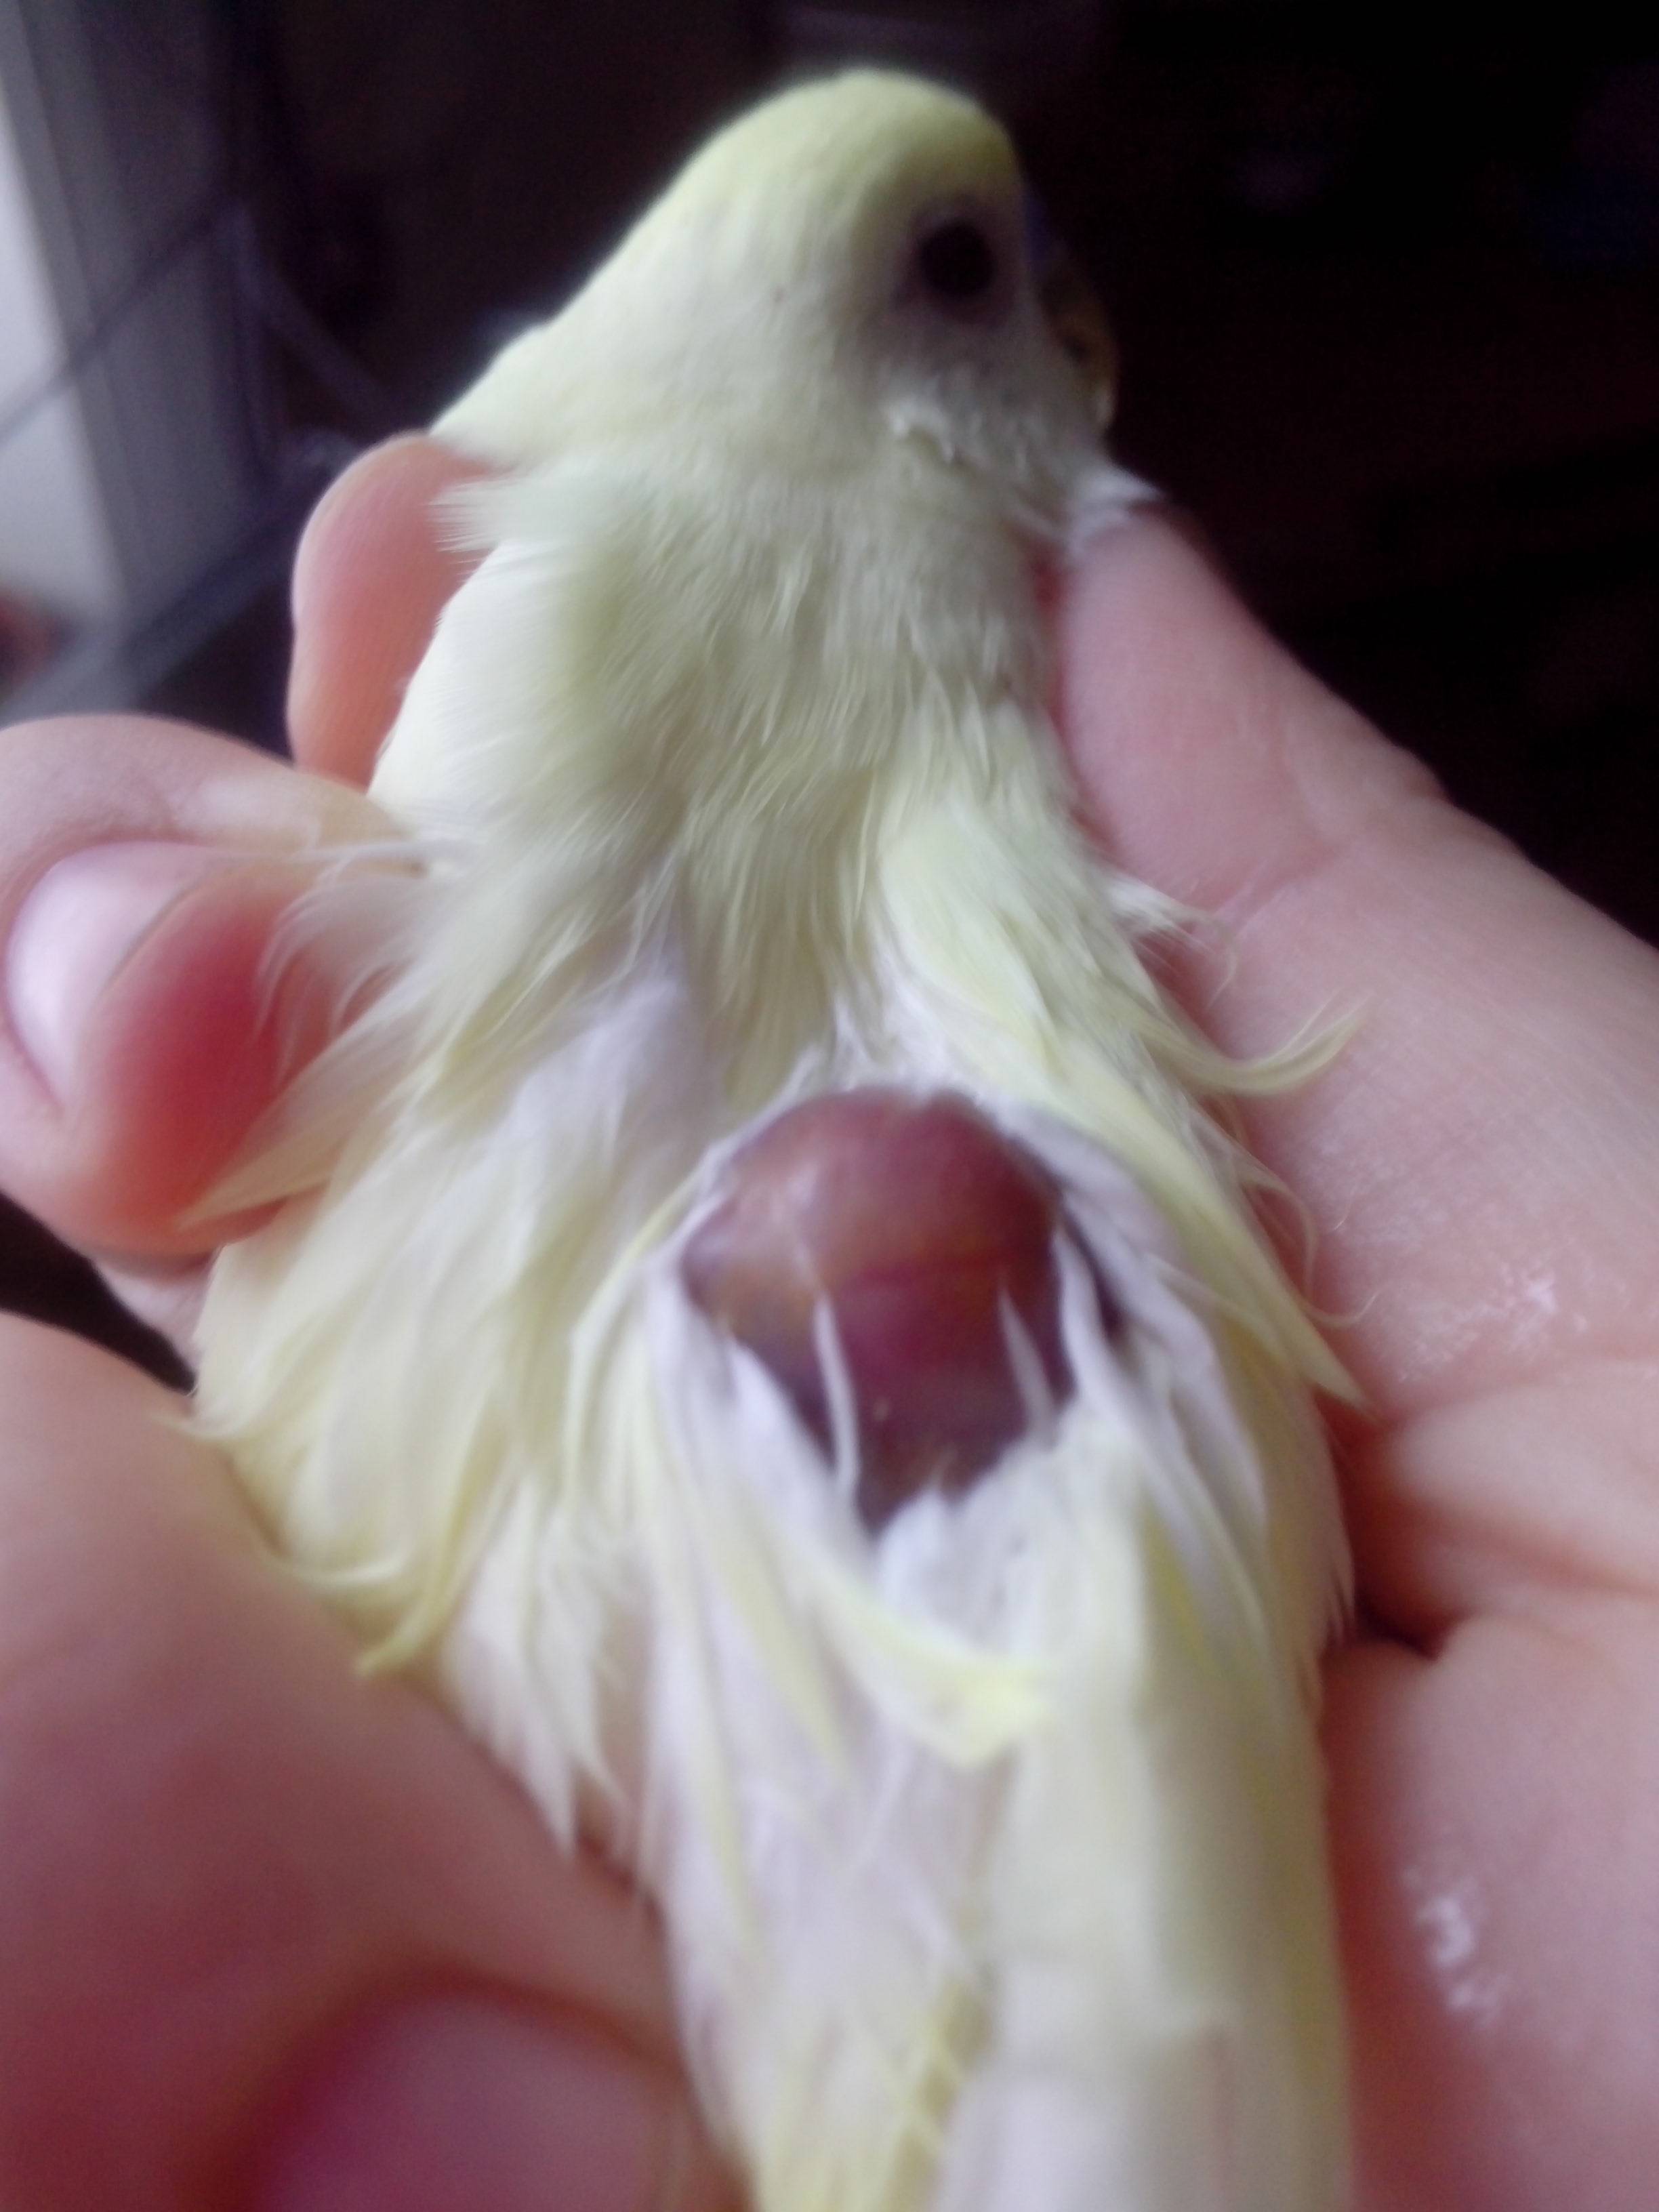 (обновлено) опухоль или шишка у попугая: под хвостом, под крылом, на животе, спине, шее, грудке